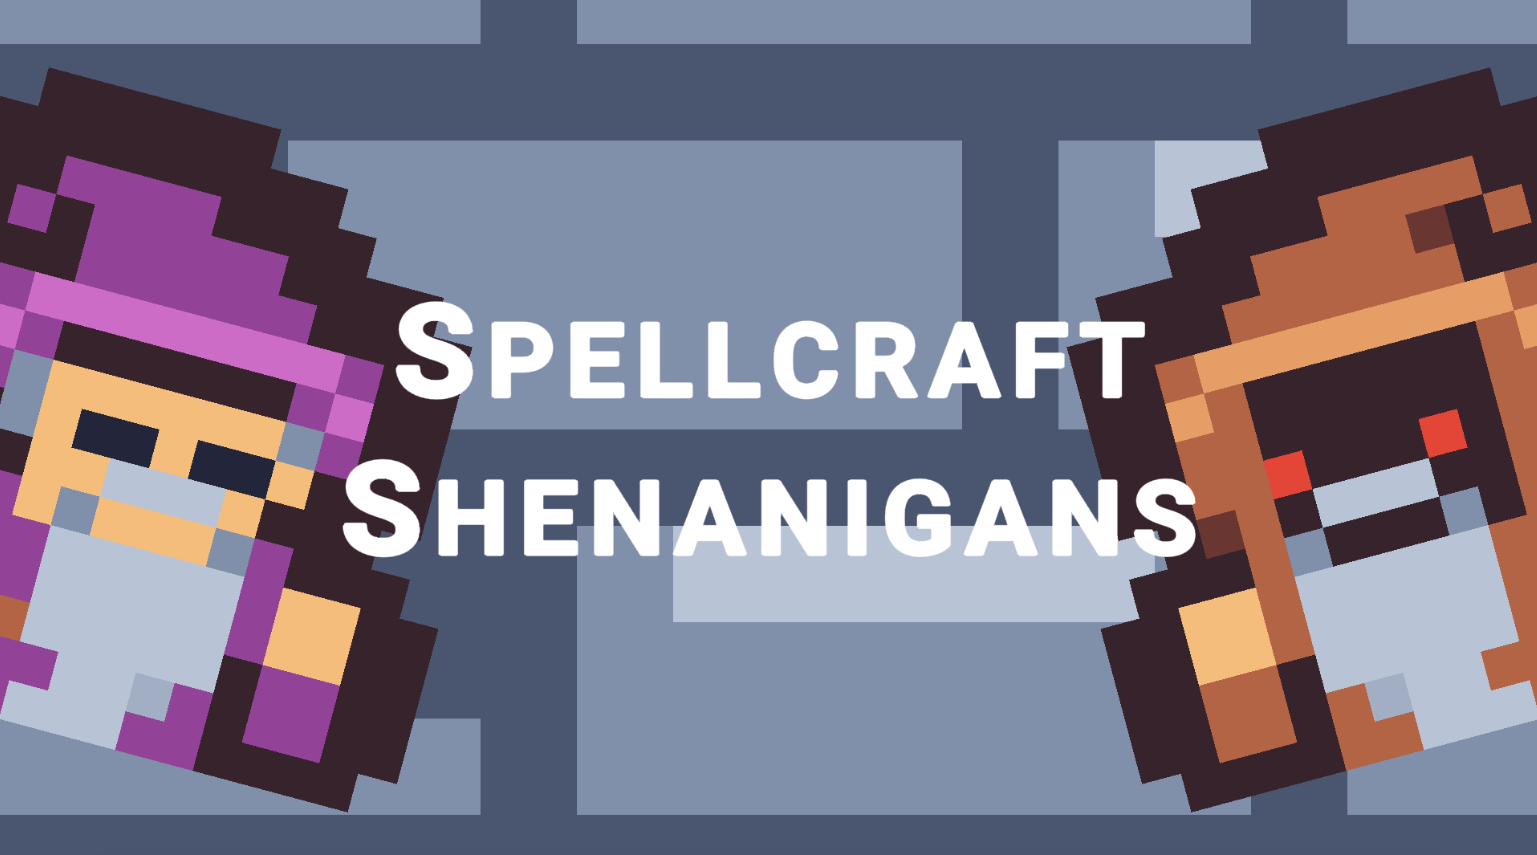 Spellcraft Shenanigans